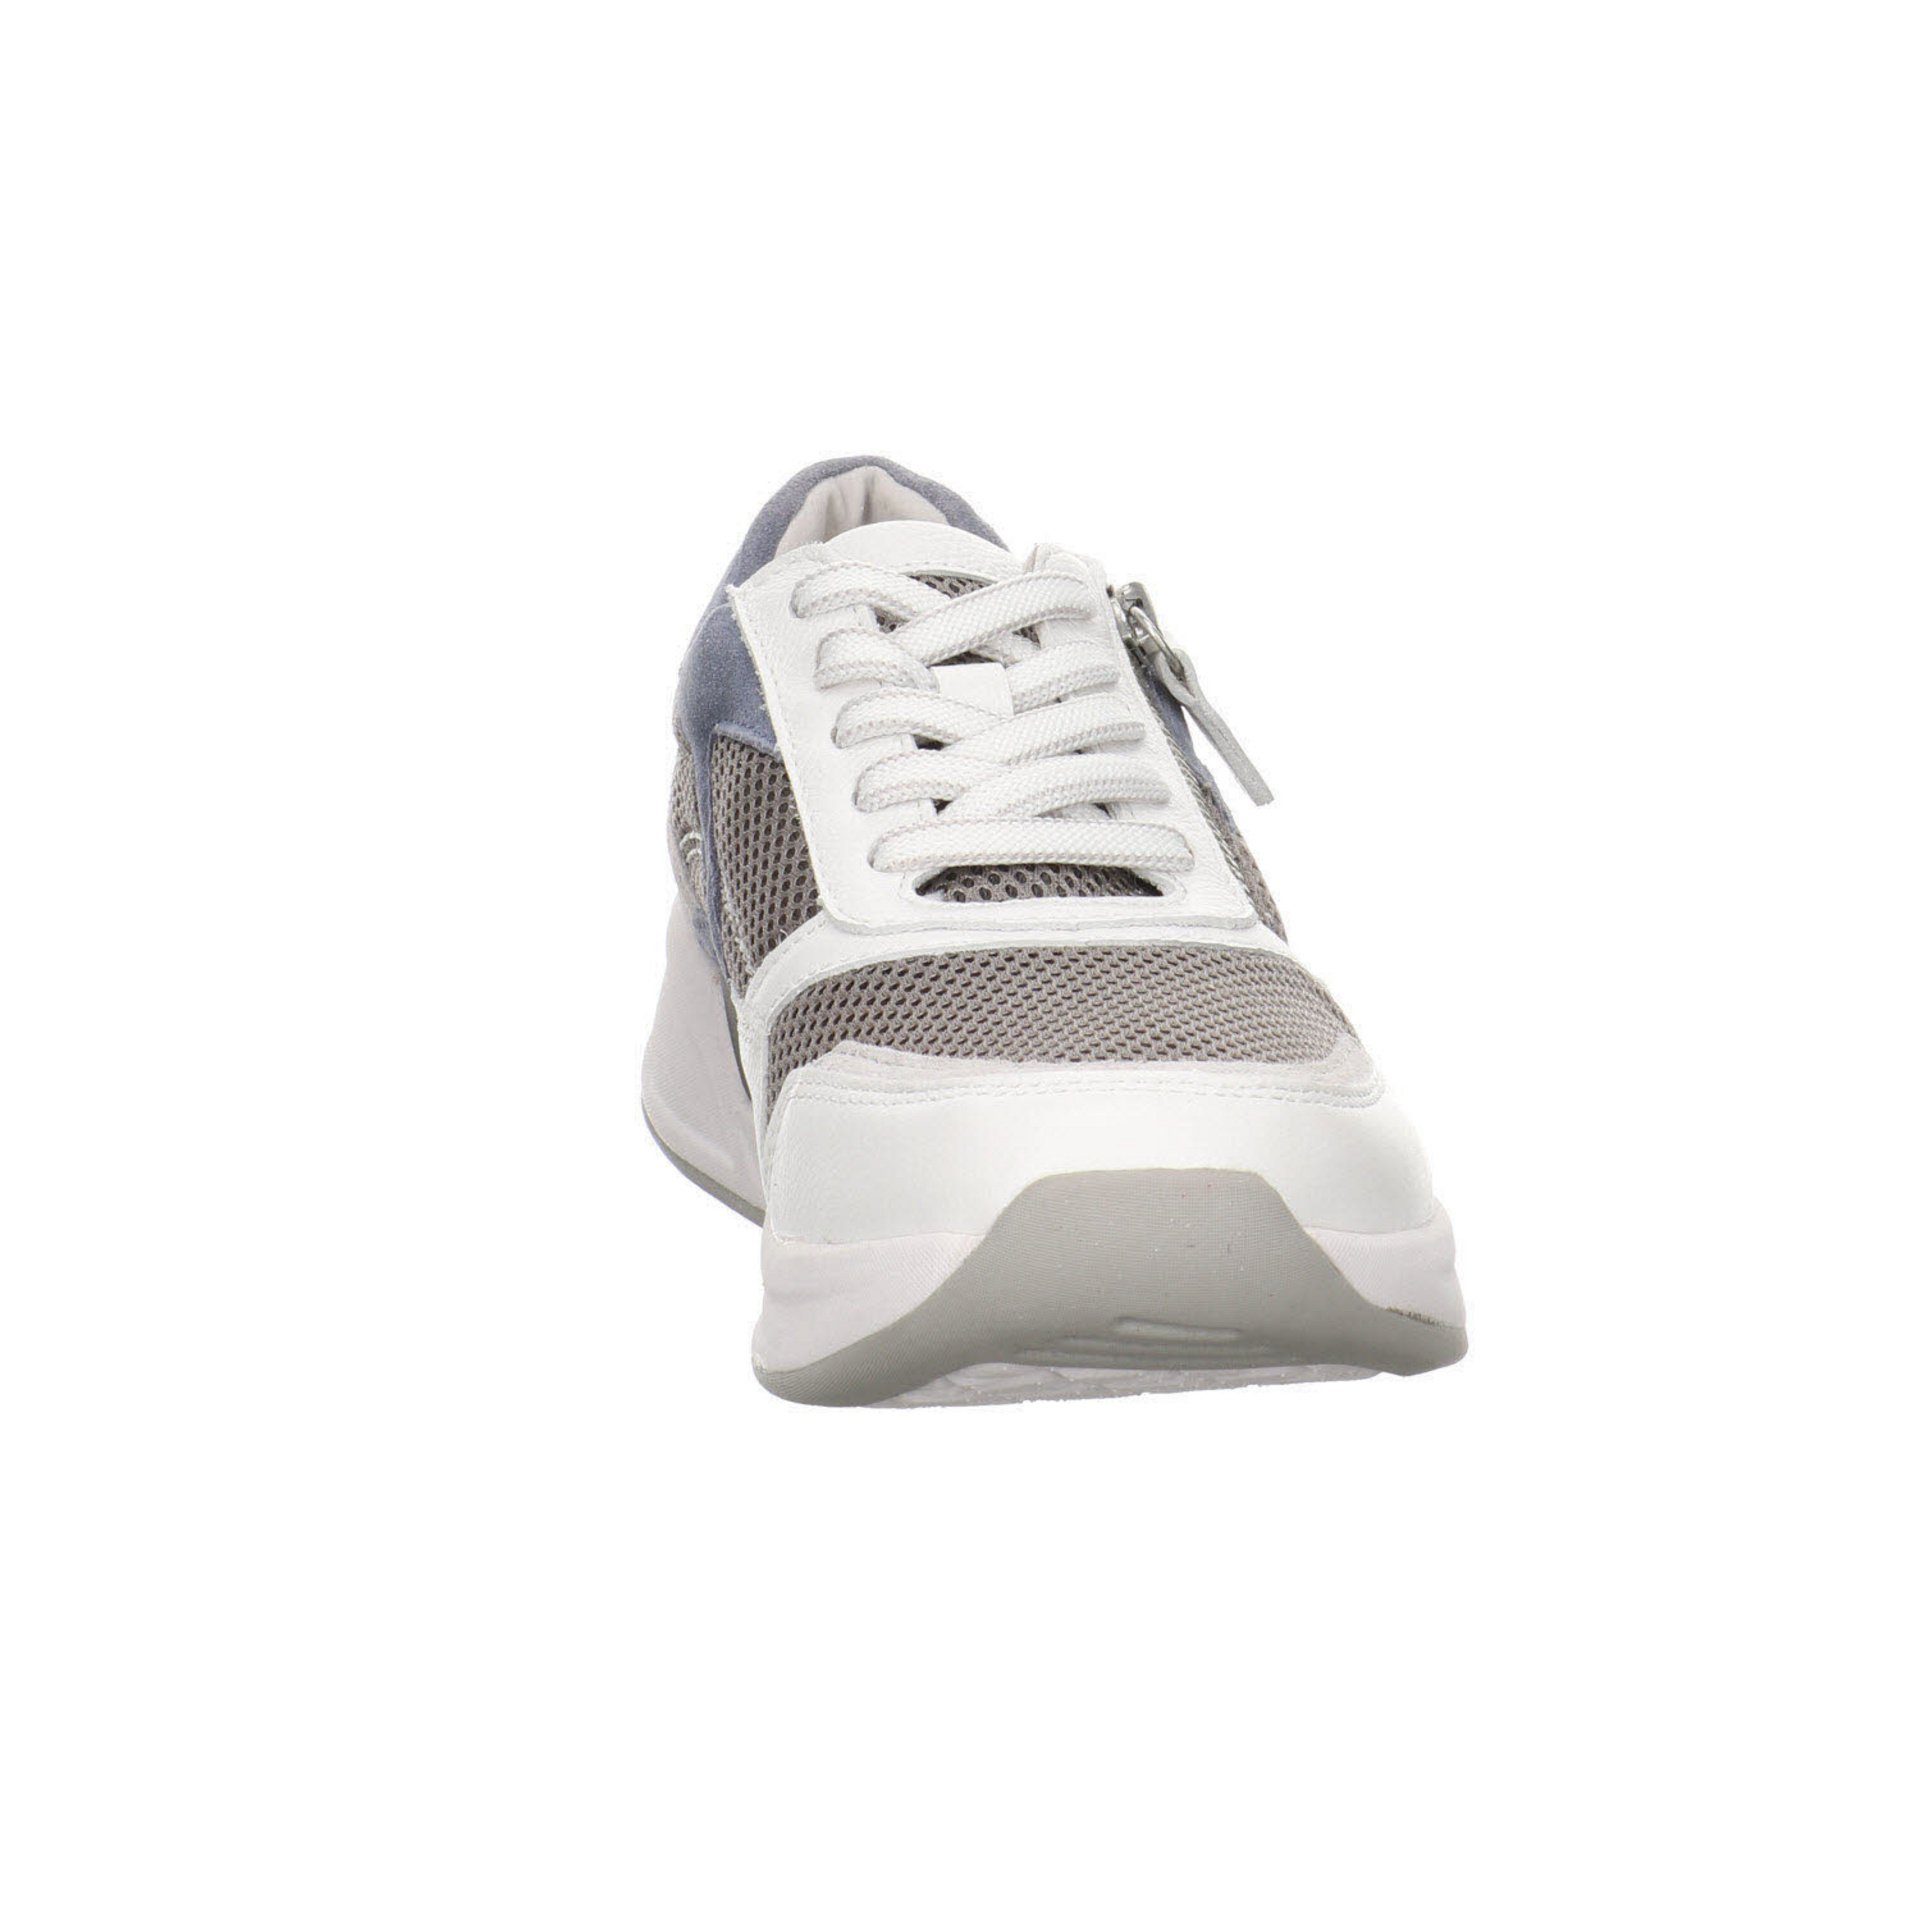 Gabor Damen Sneaker Schuhe Rollingsoft Schnürschuh Leder-/Textilkombination / 41 Sneaker grau/weiss/nautic